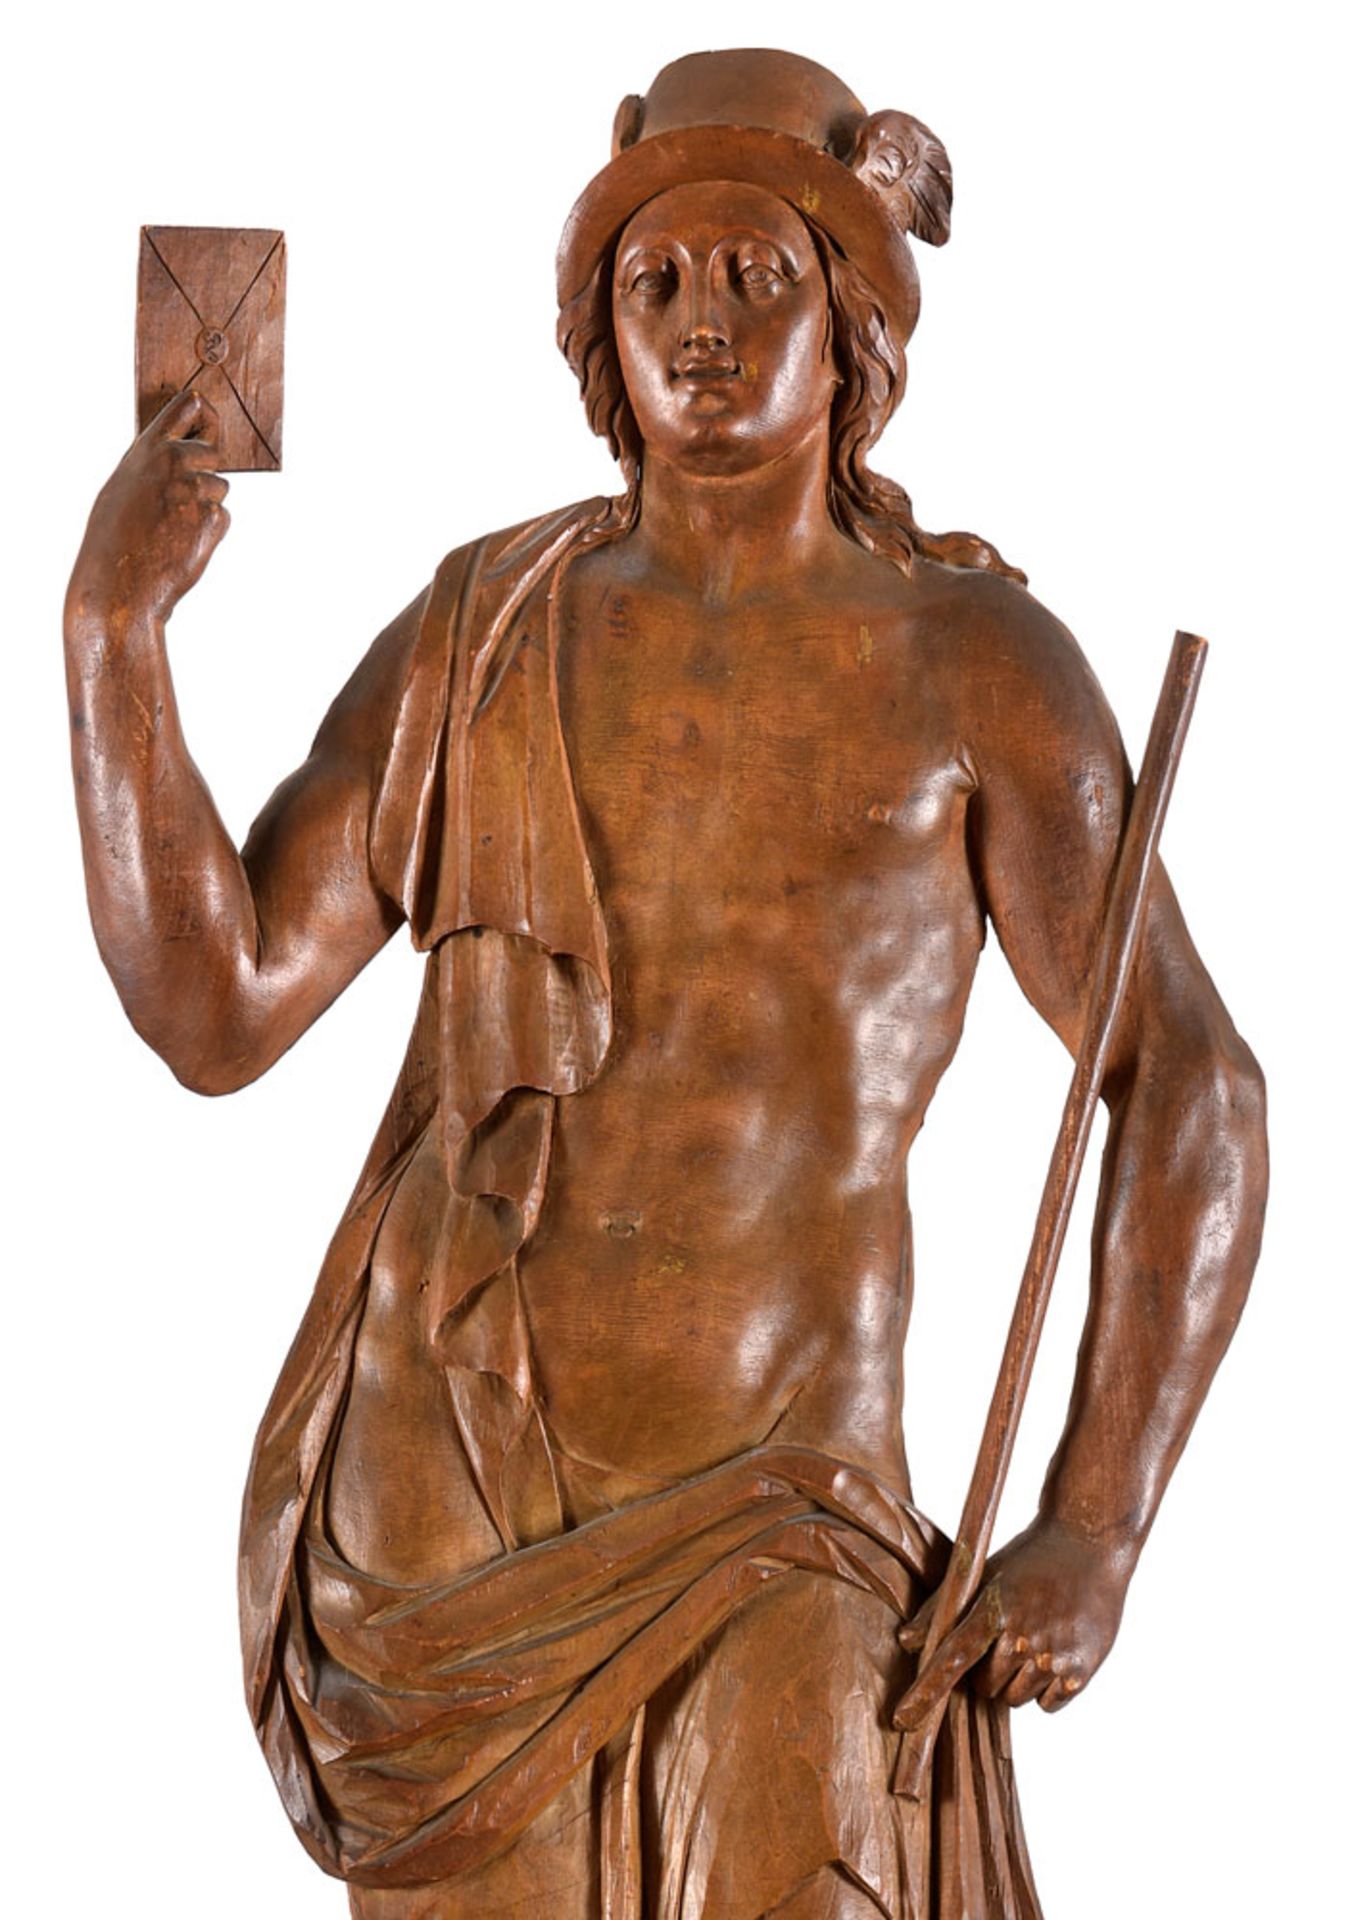 Klassizistisches Hermes-Relief   Wohl Niederlande um 1800 - Bild 2 aus 2